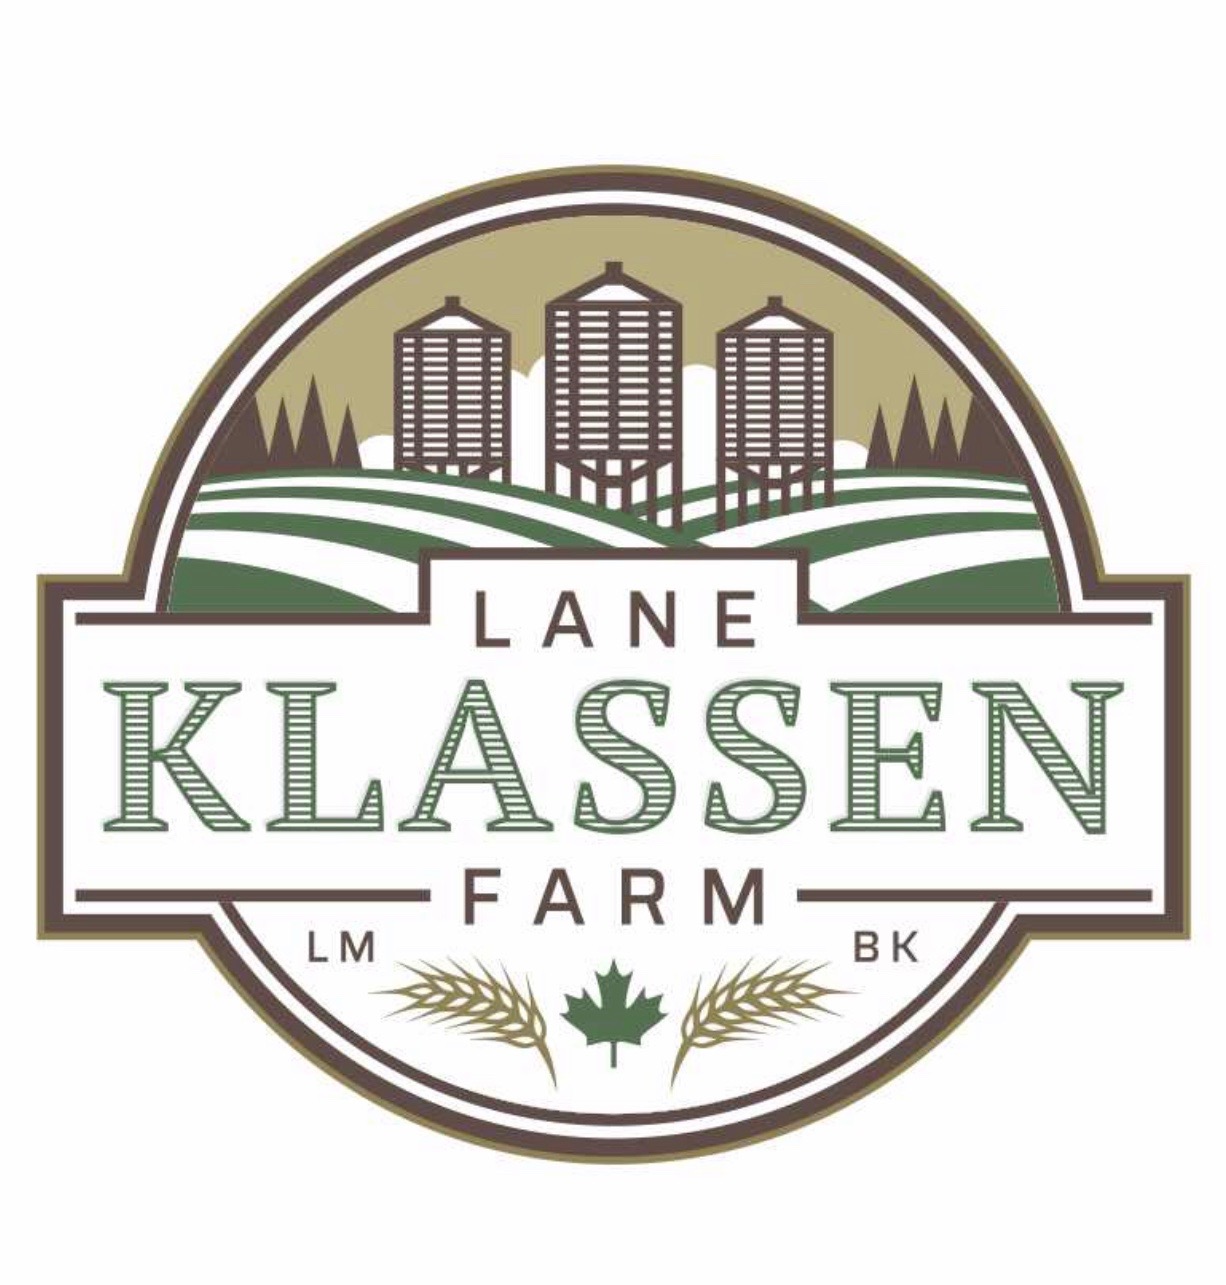 Lane Klassen Farm